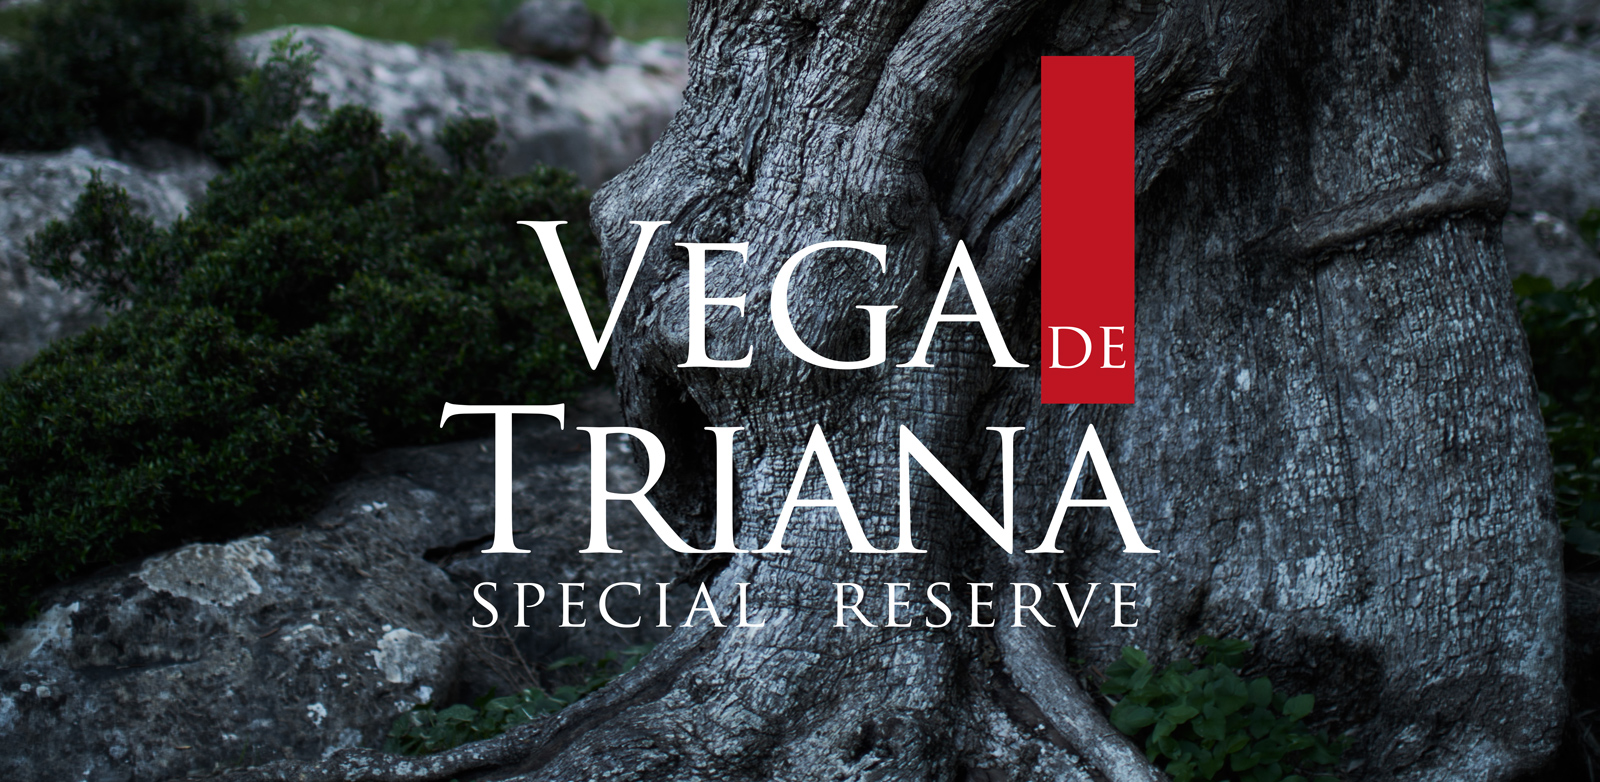 Diseño gráfico y creativo de etiquetas de aceite de oliva virgen extra para la marca VEGA DE TRIANA